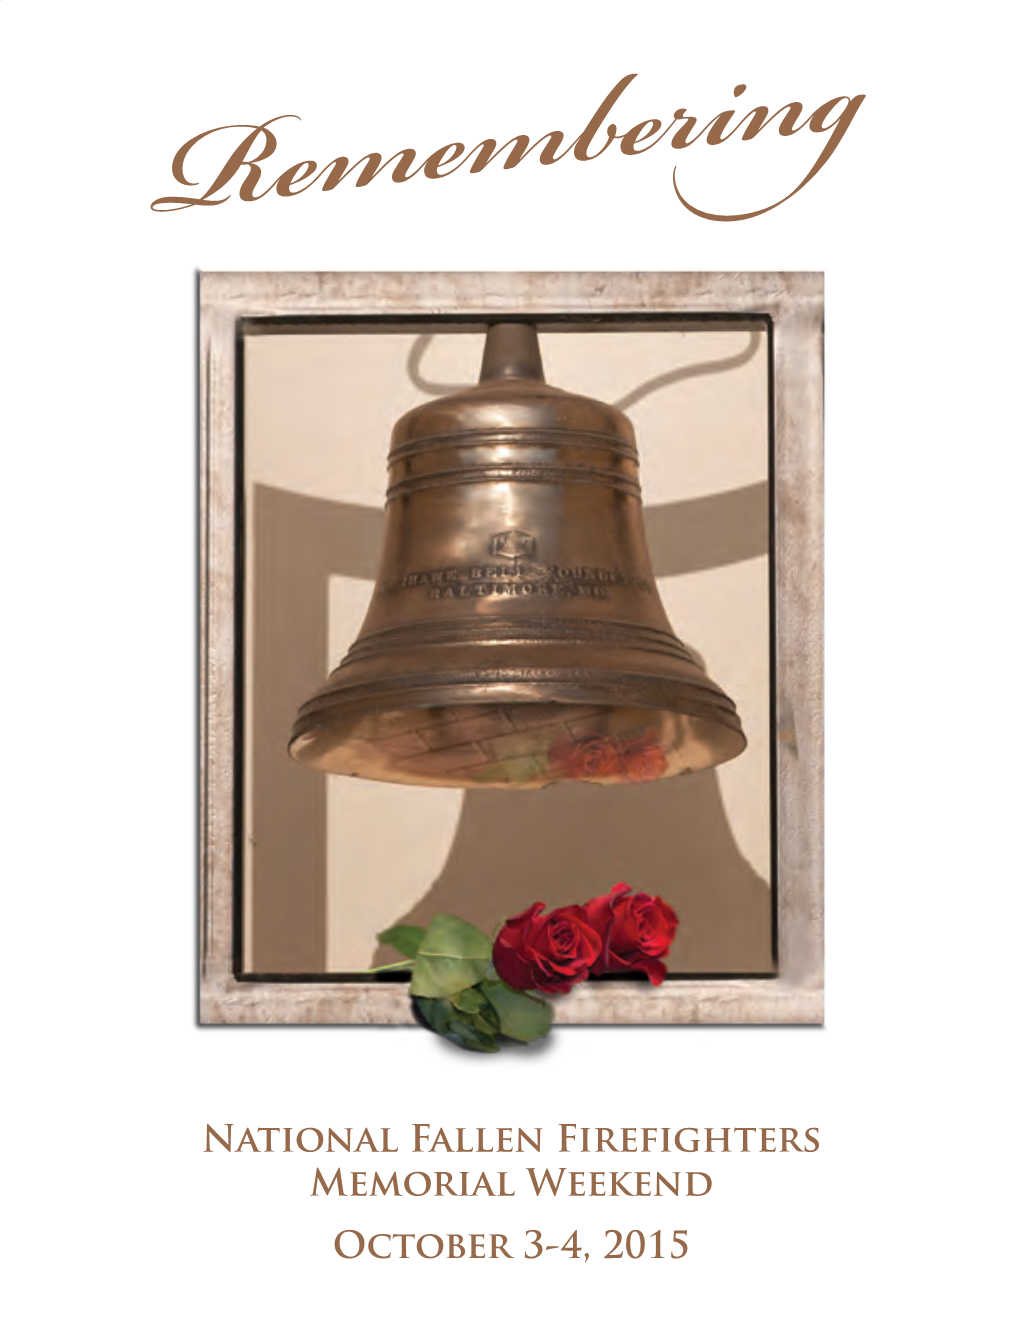 National Fallen Firefighters Memorial Weekend October 3-4, 2015